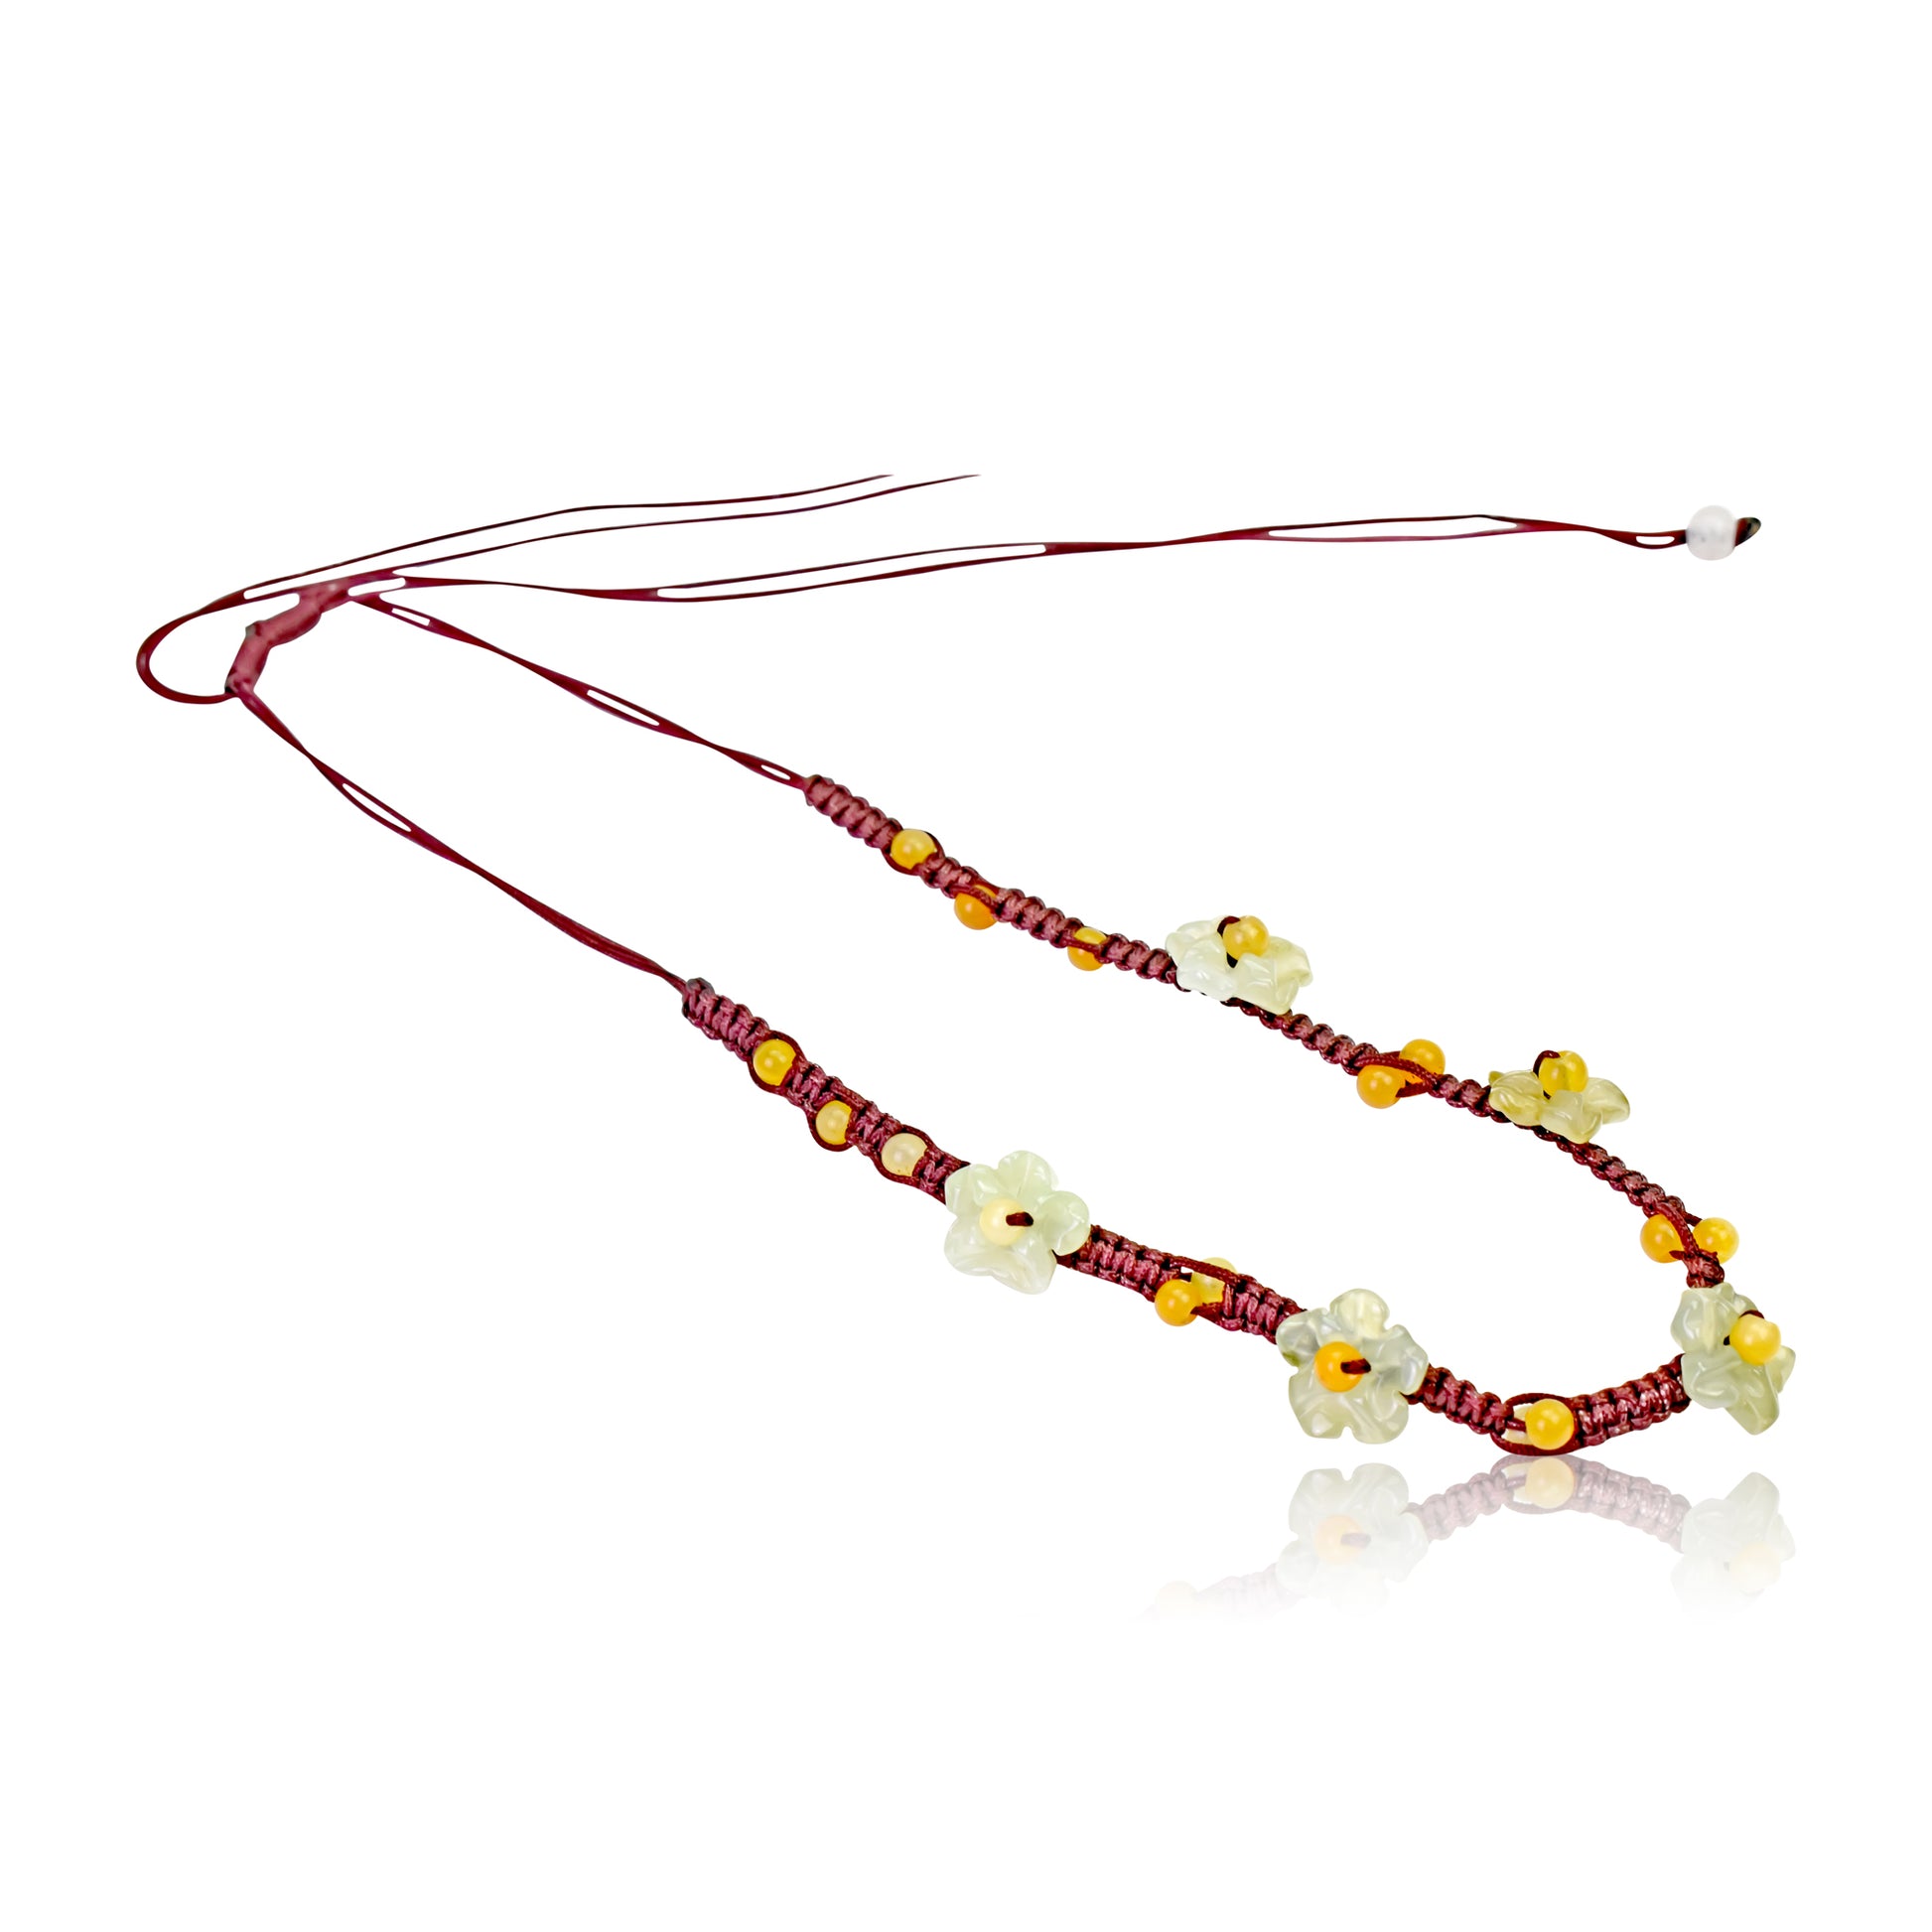 Subtle & Earthy Scarlet Pimpernel Flower Jade Necklace